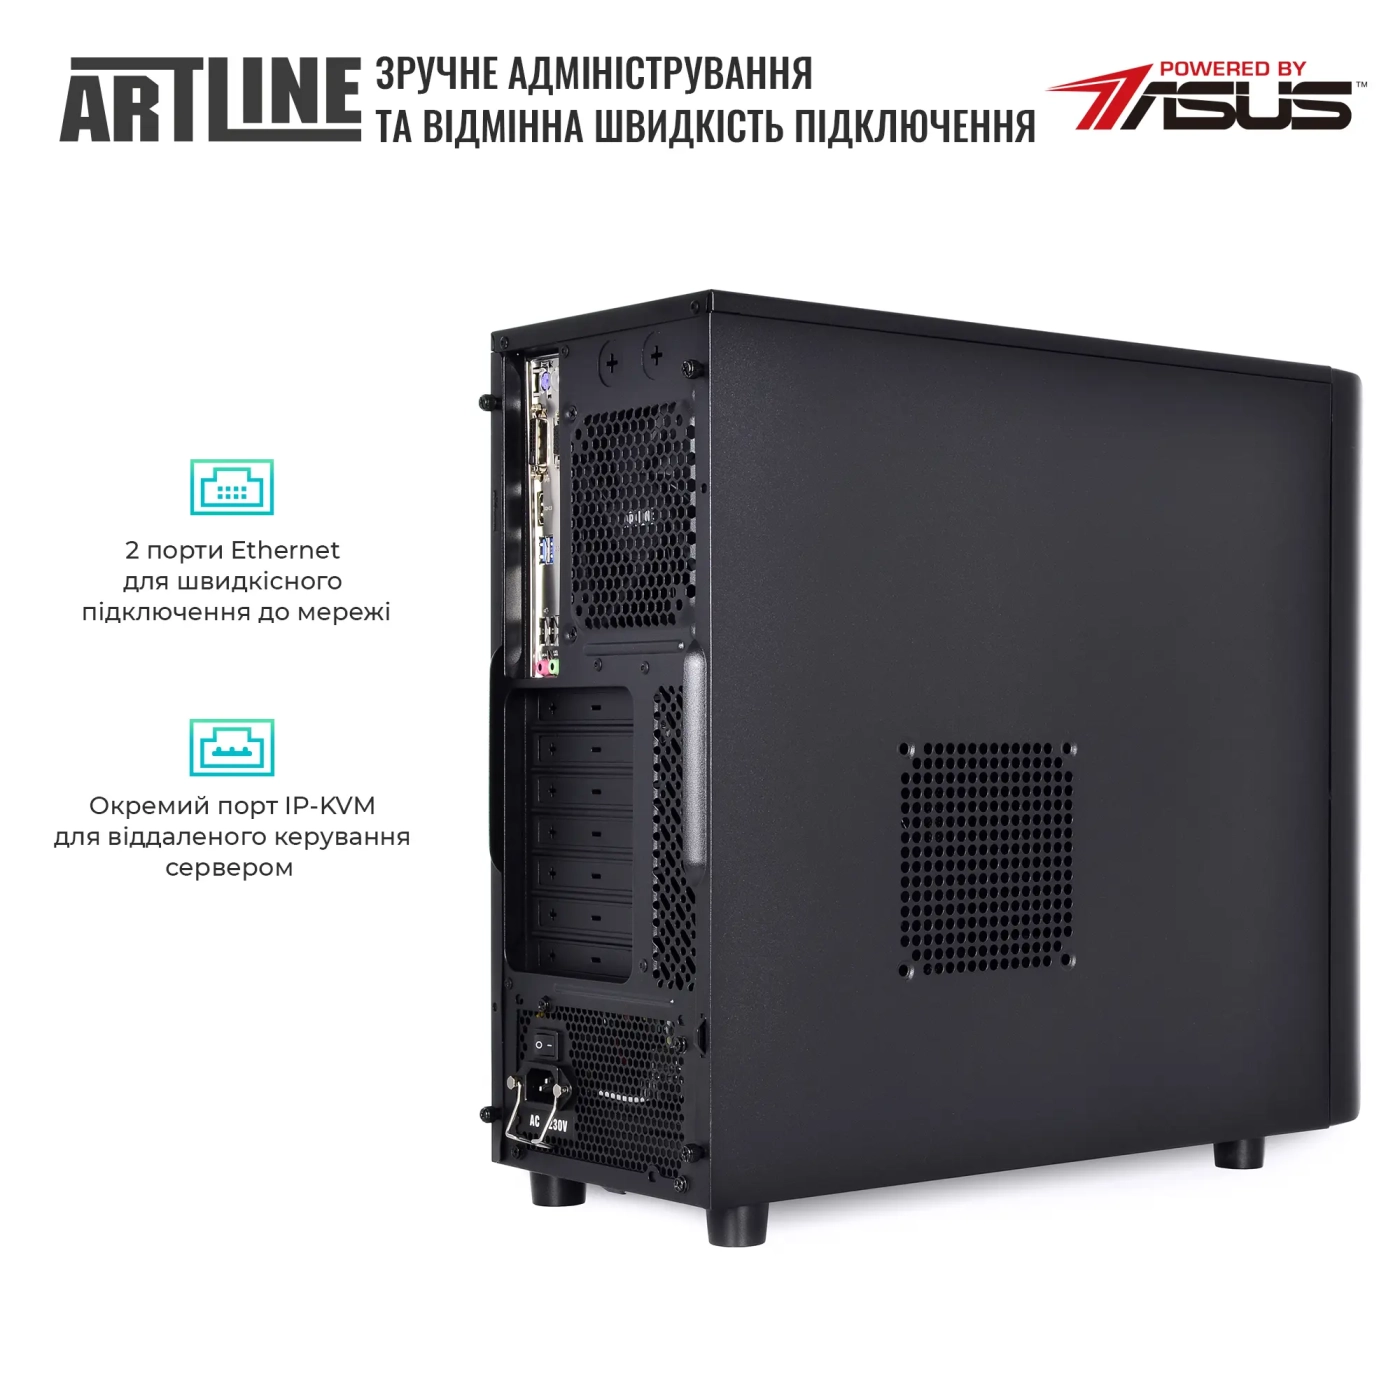 Купить Сервер ARTLINE Business T35 (T35v36) - фото 5